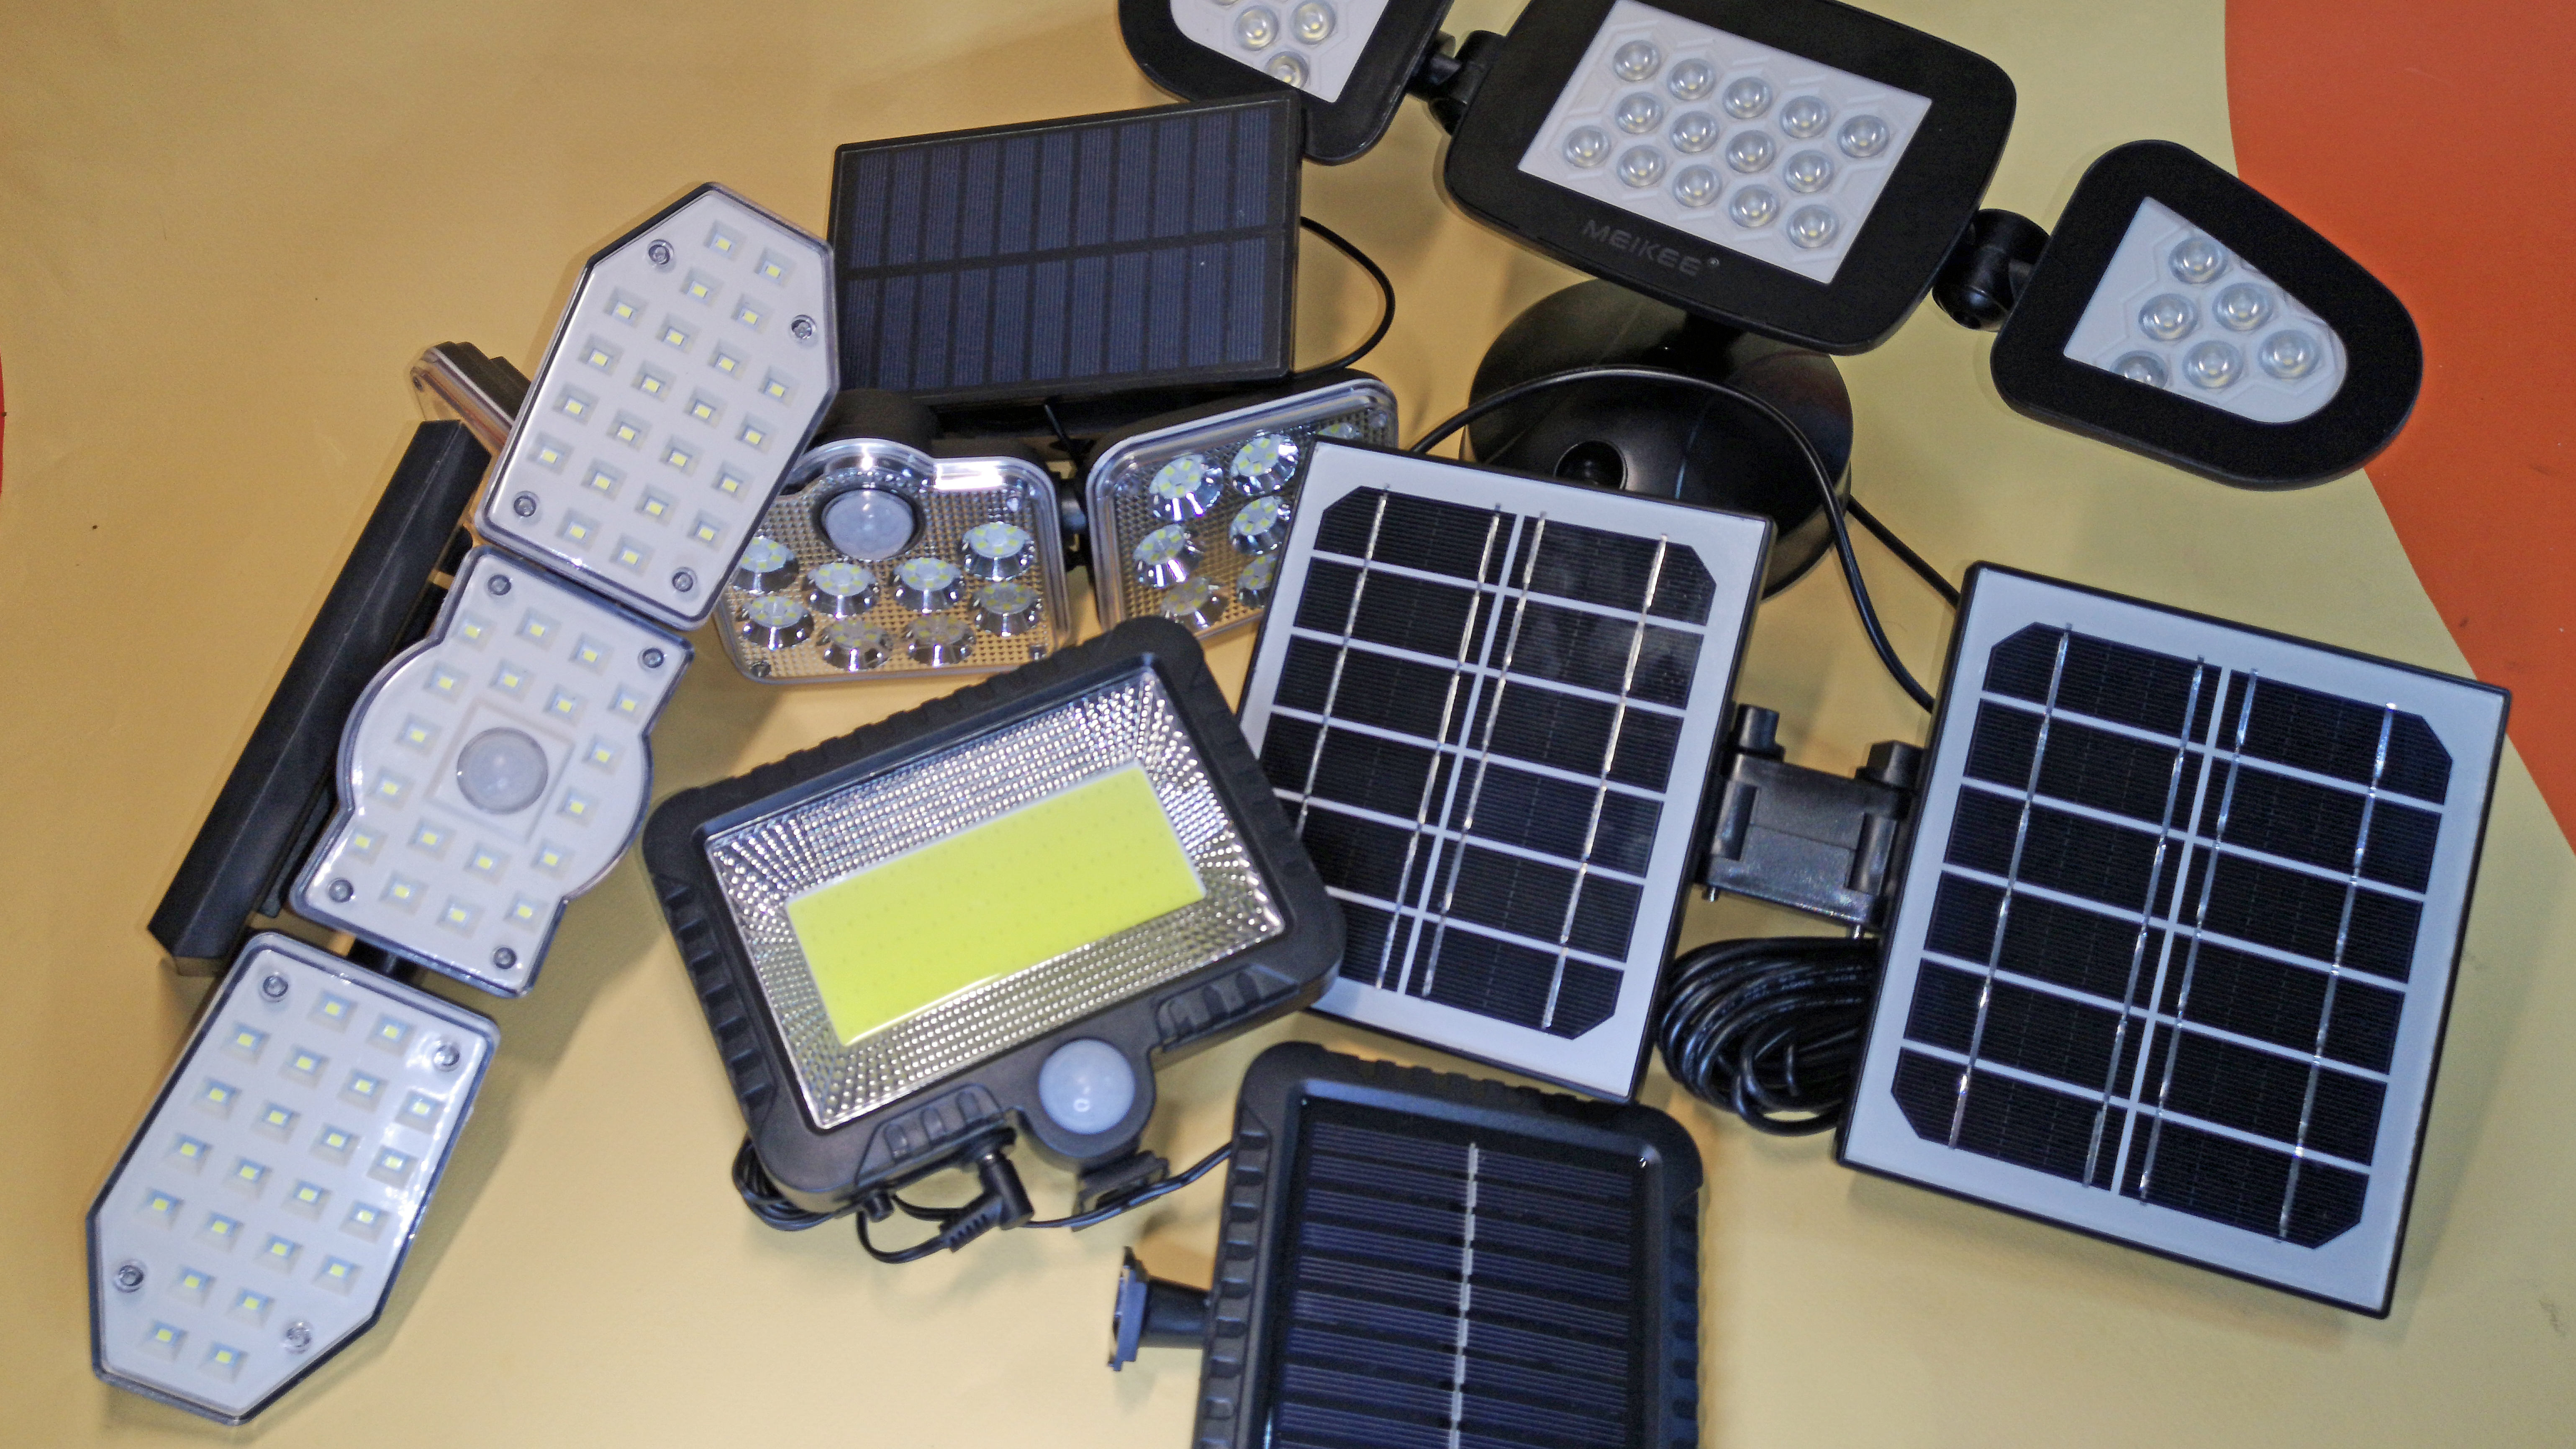 Günstig, hell und autark: Solarlampen & Solarleuchten für außen ab 10 Euro  | TechStage